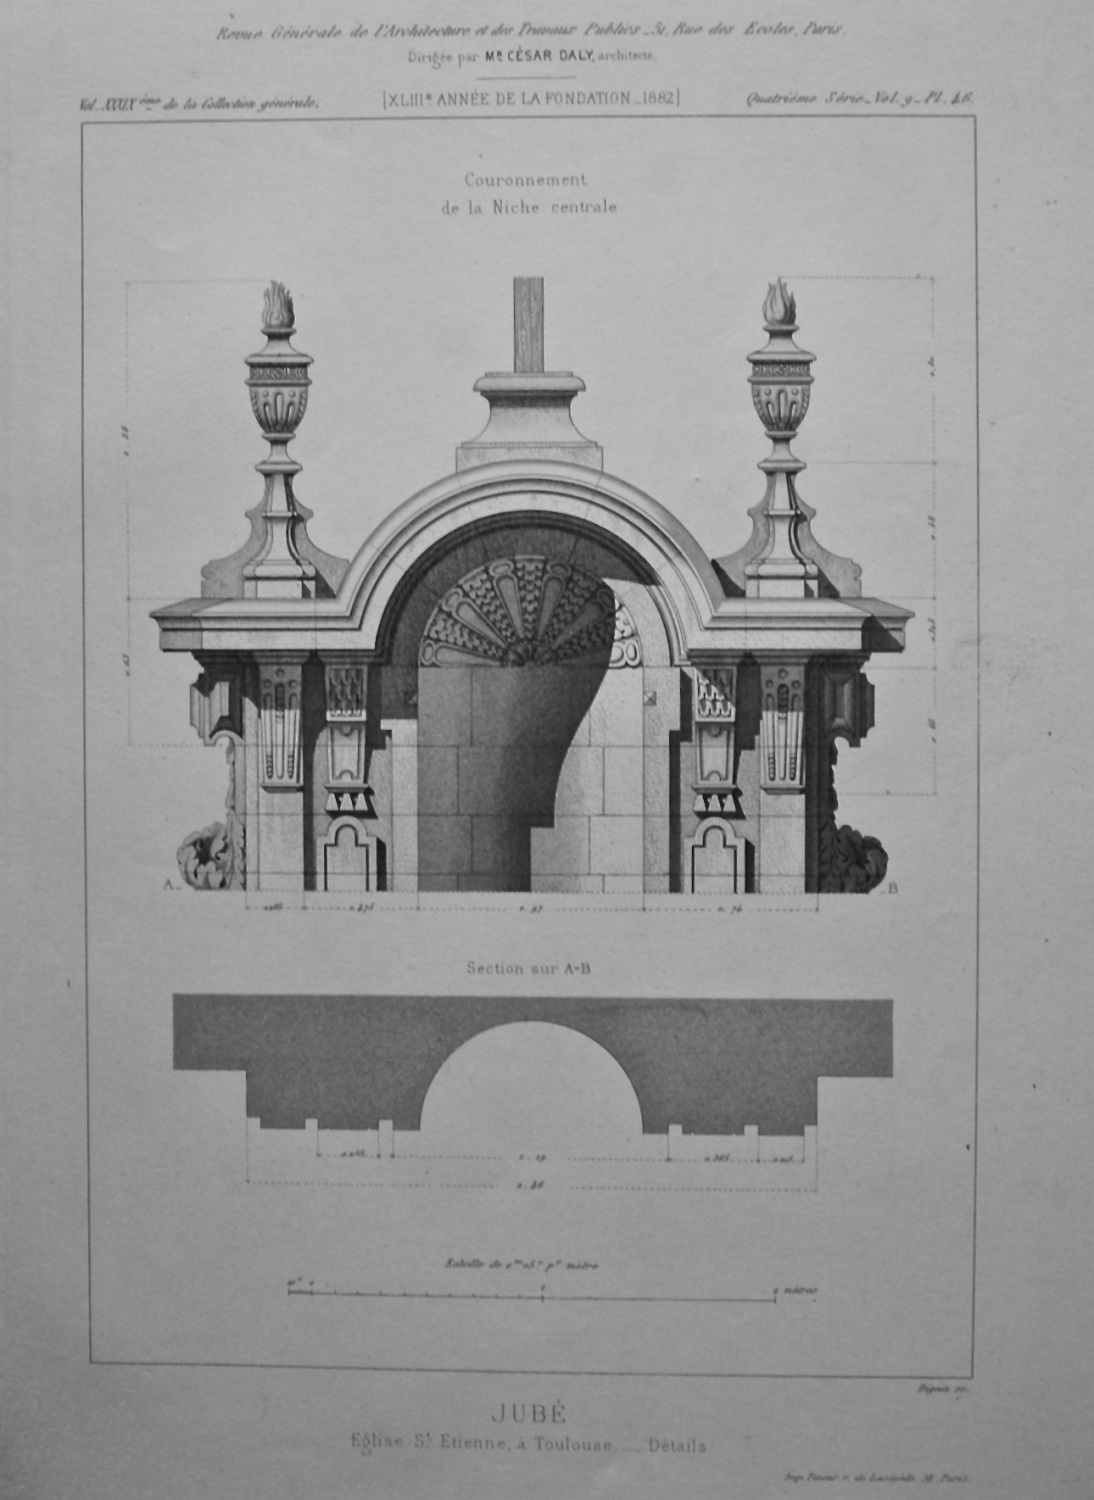 June. Eglise St. Etienne, a Toulouse. _ Details.  1882.